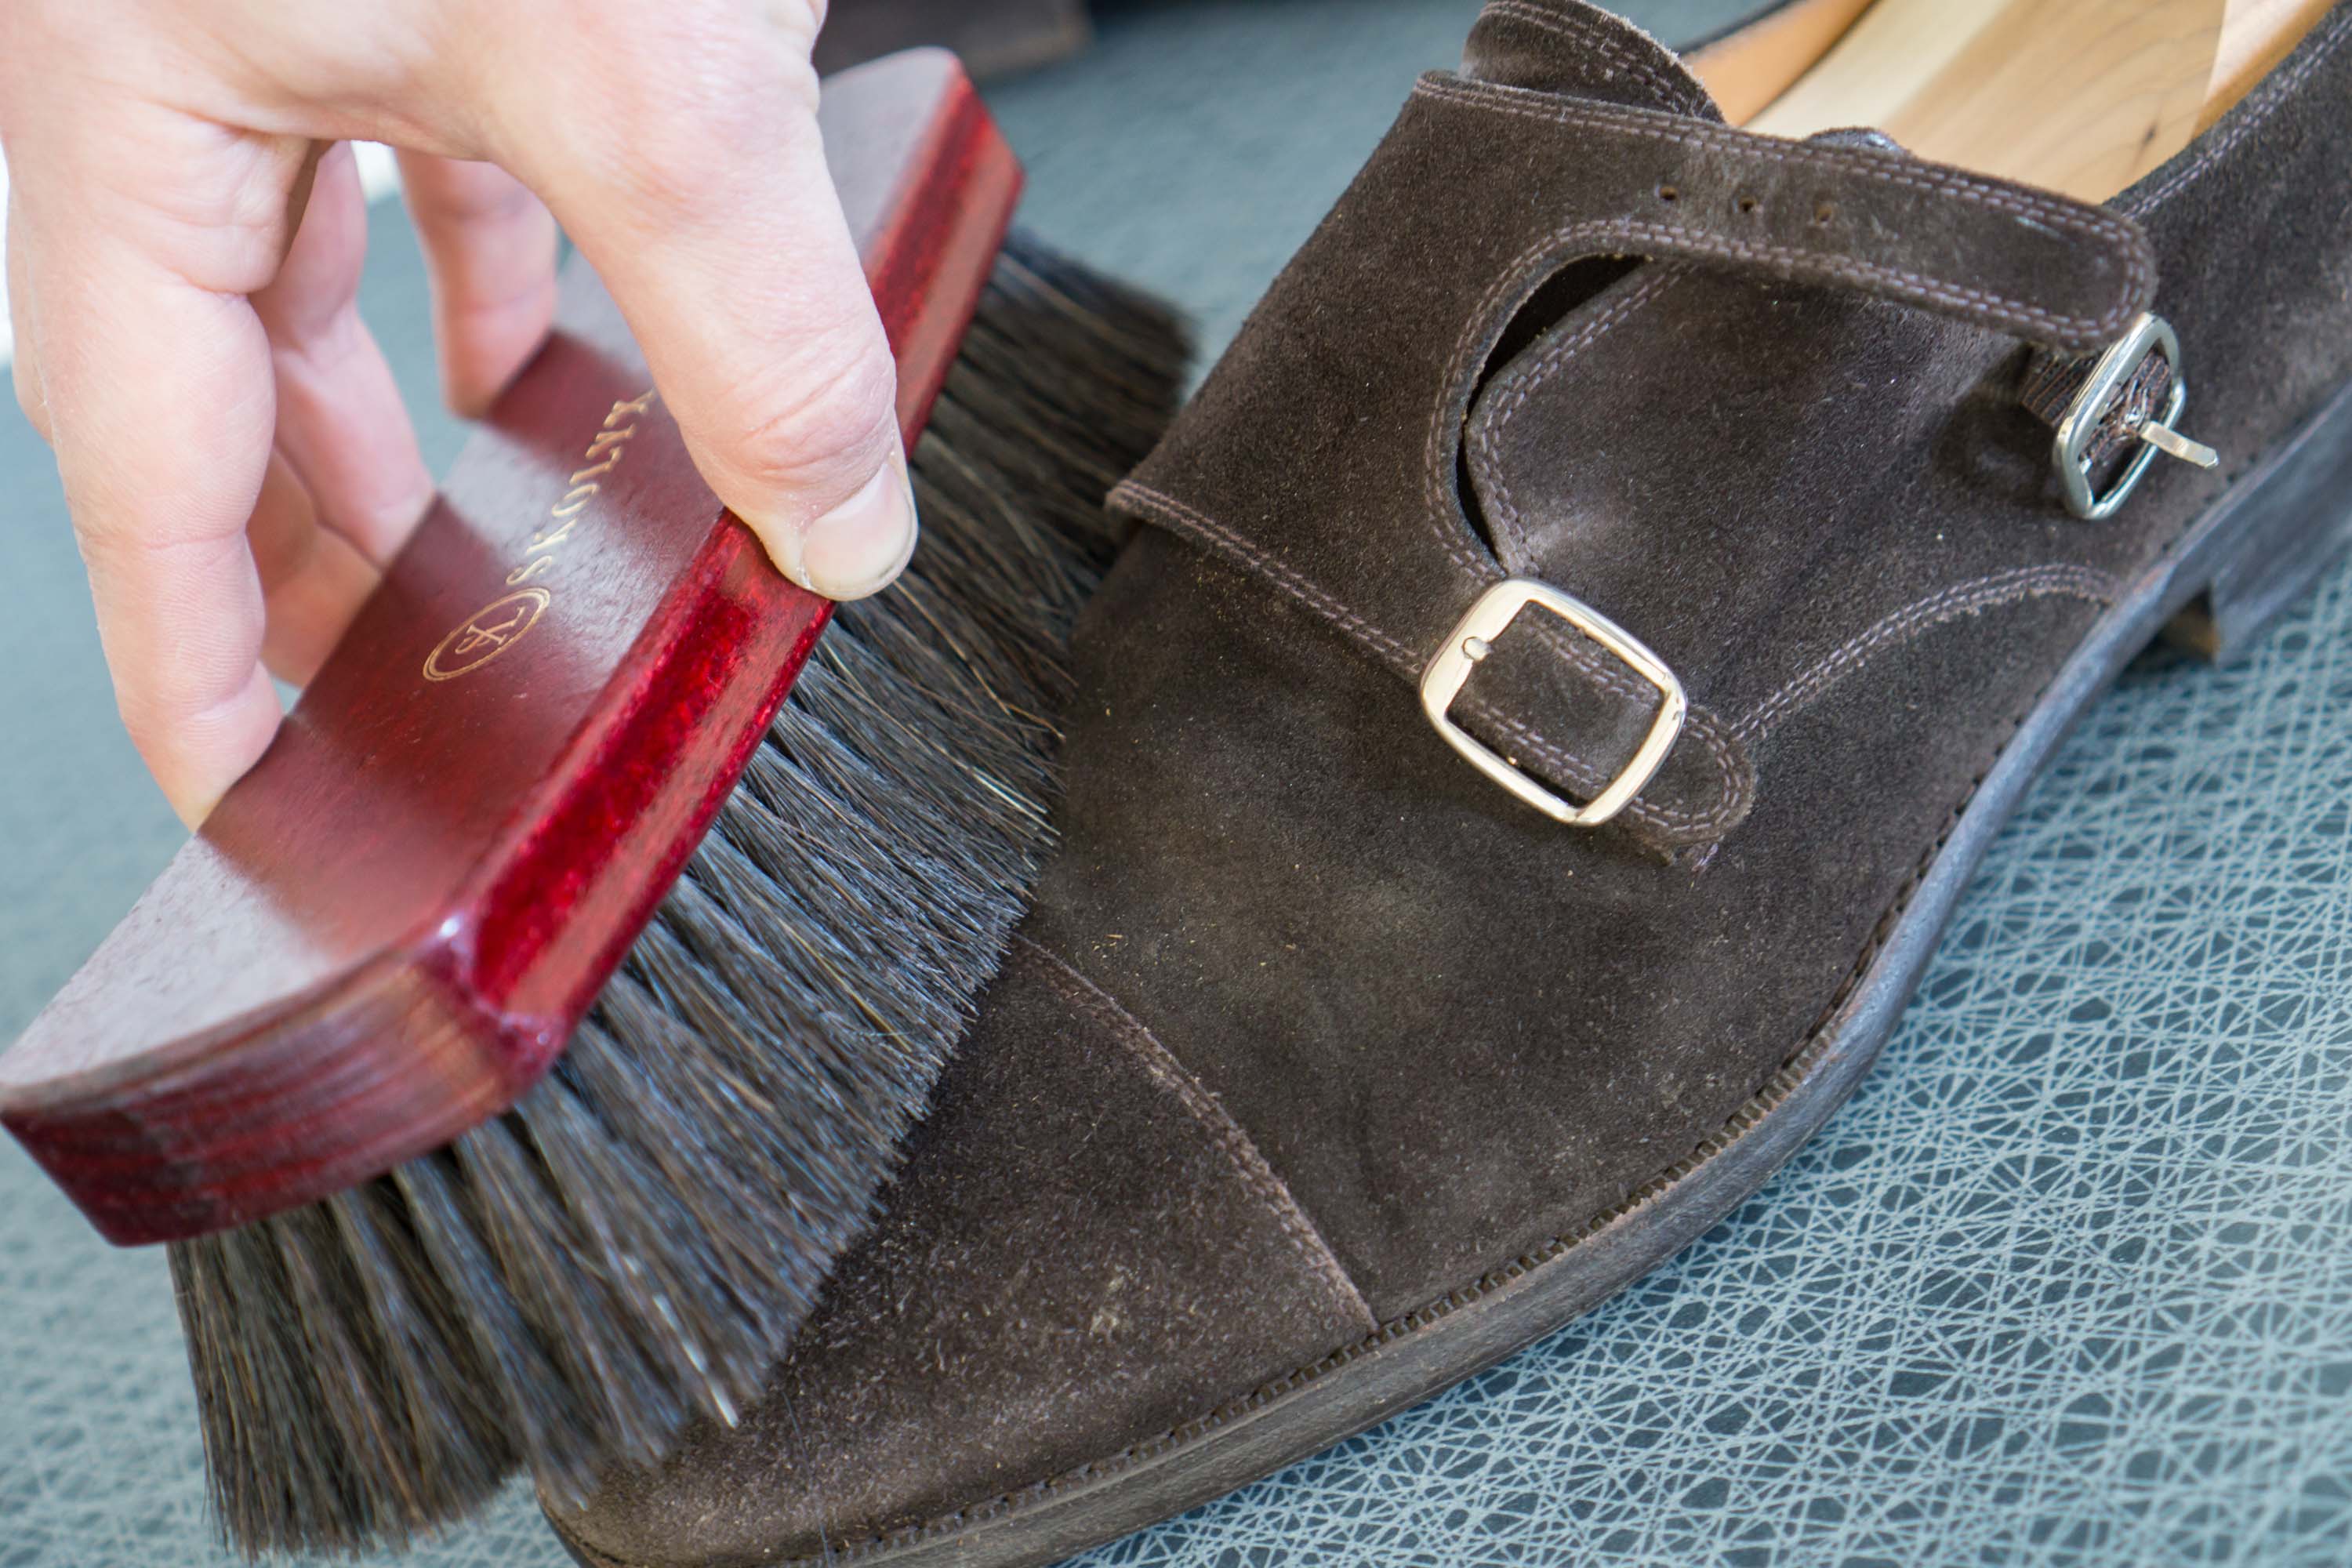 Borsta/torka av skorna efter användning